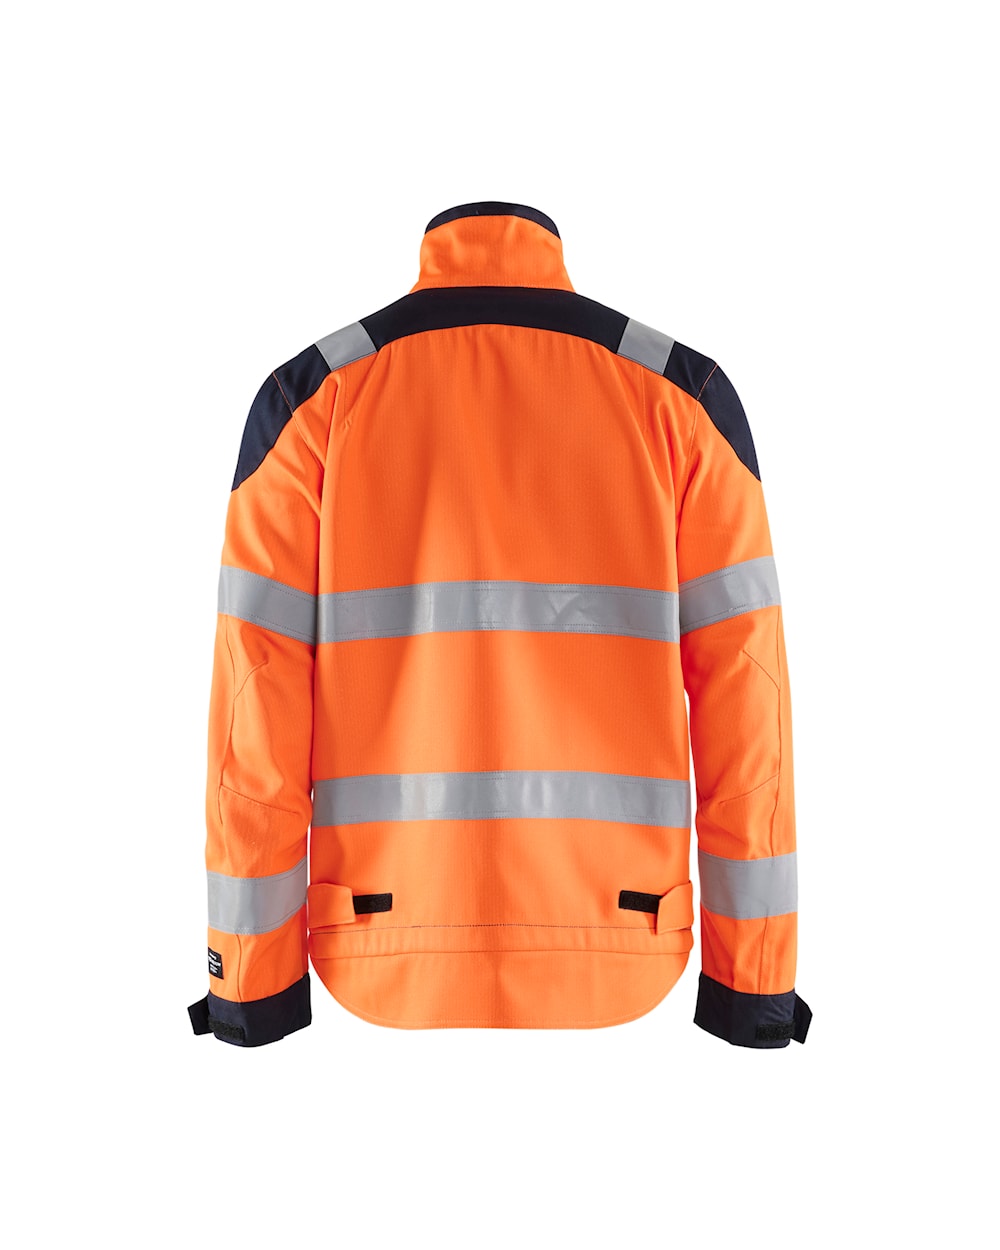 Blaklader Multinorm Inherent Winter Jacket 4069 #colour_orange-navy-blue